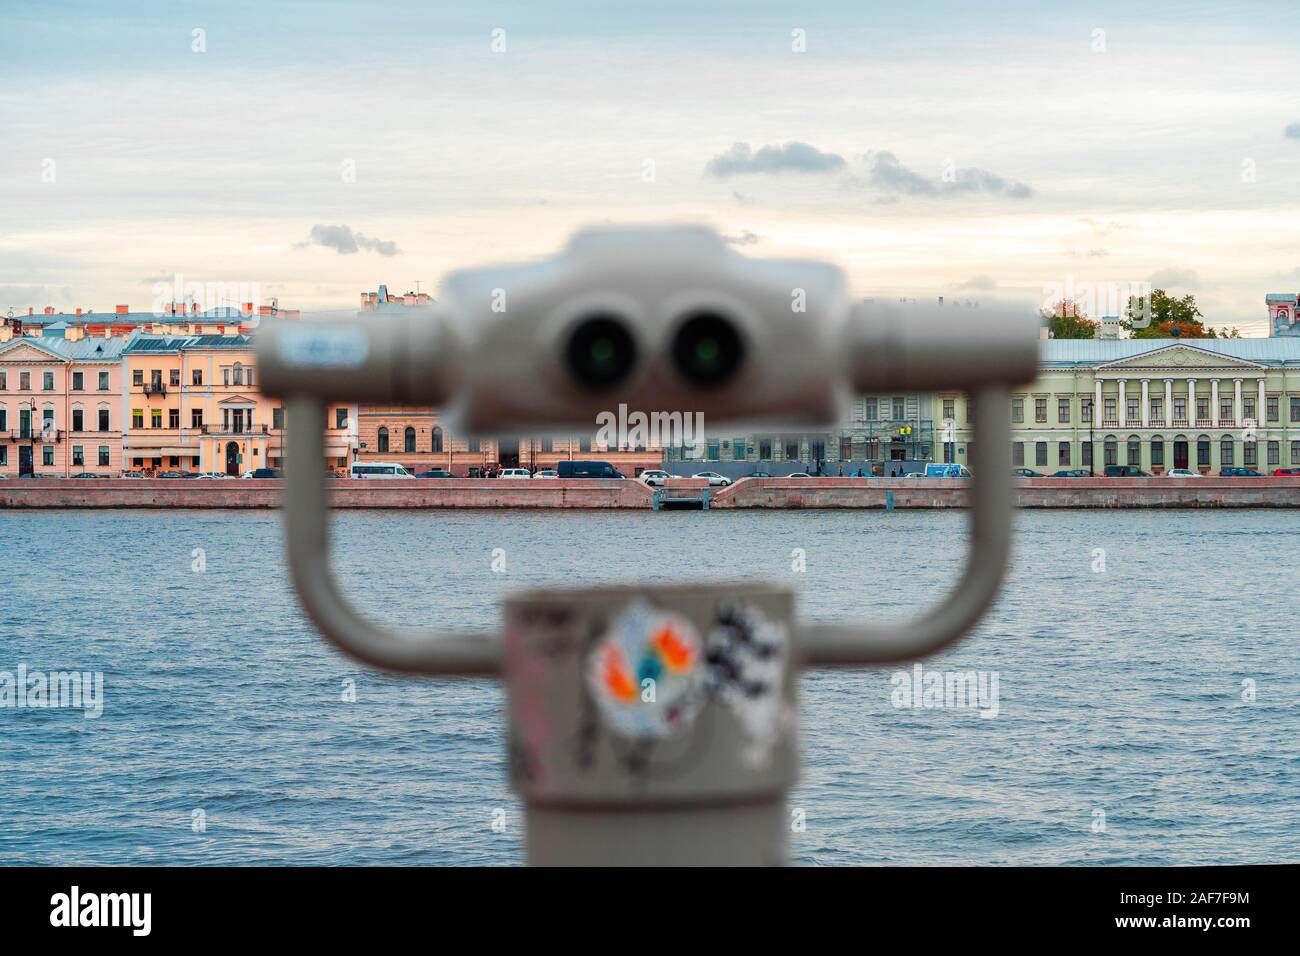 Touristische Fernglas mit Blick auf einen Fluss und Sankt Petersburg. Ferngläser werden zur Vordergrund- und Konzentrieren. Besichtigungen und Reisen. Travel Concept. Stockfoto